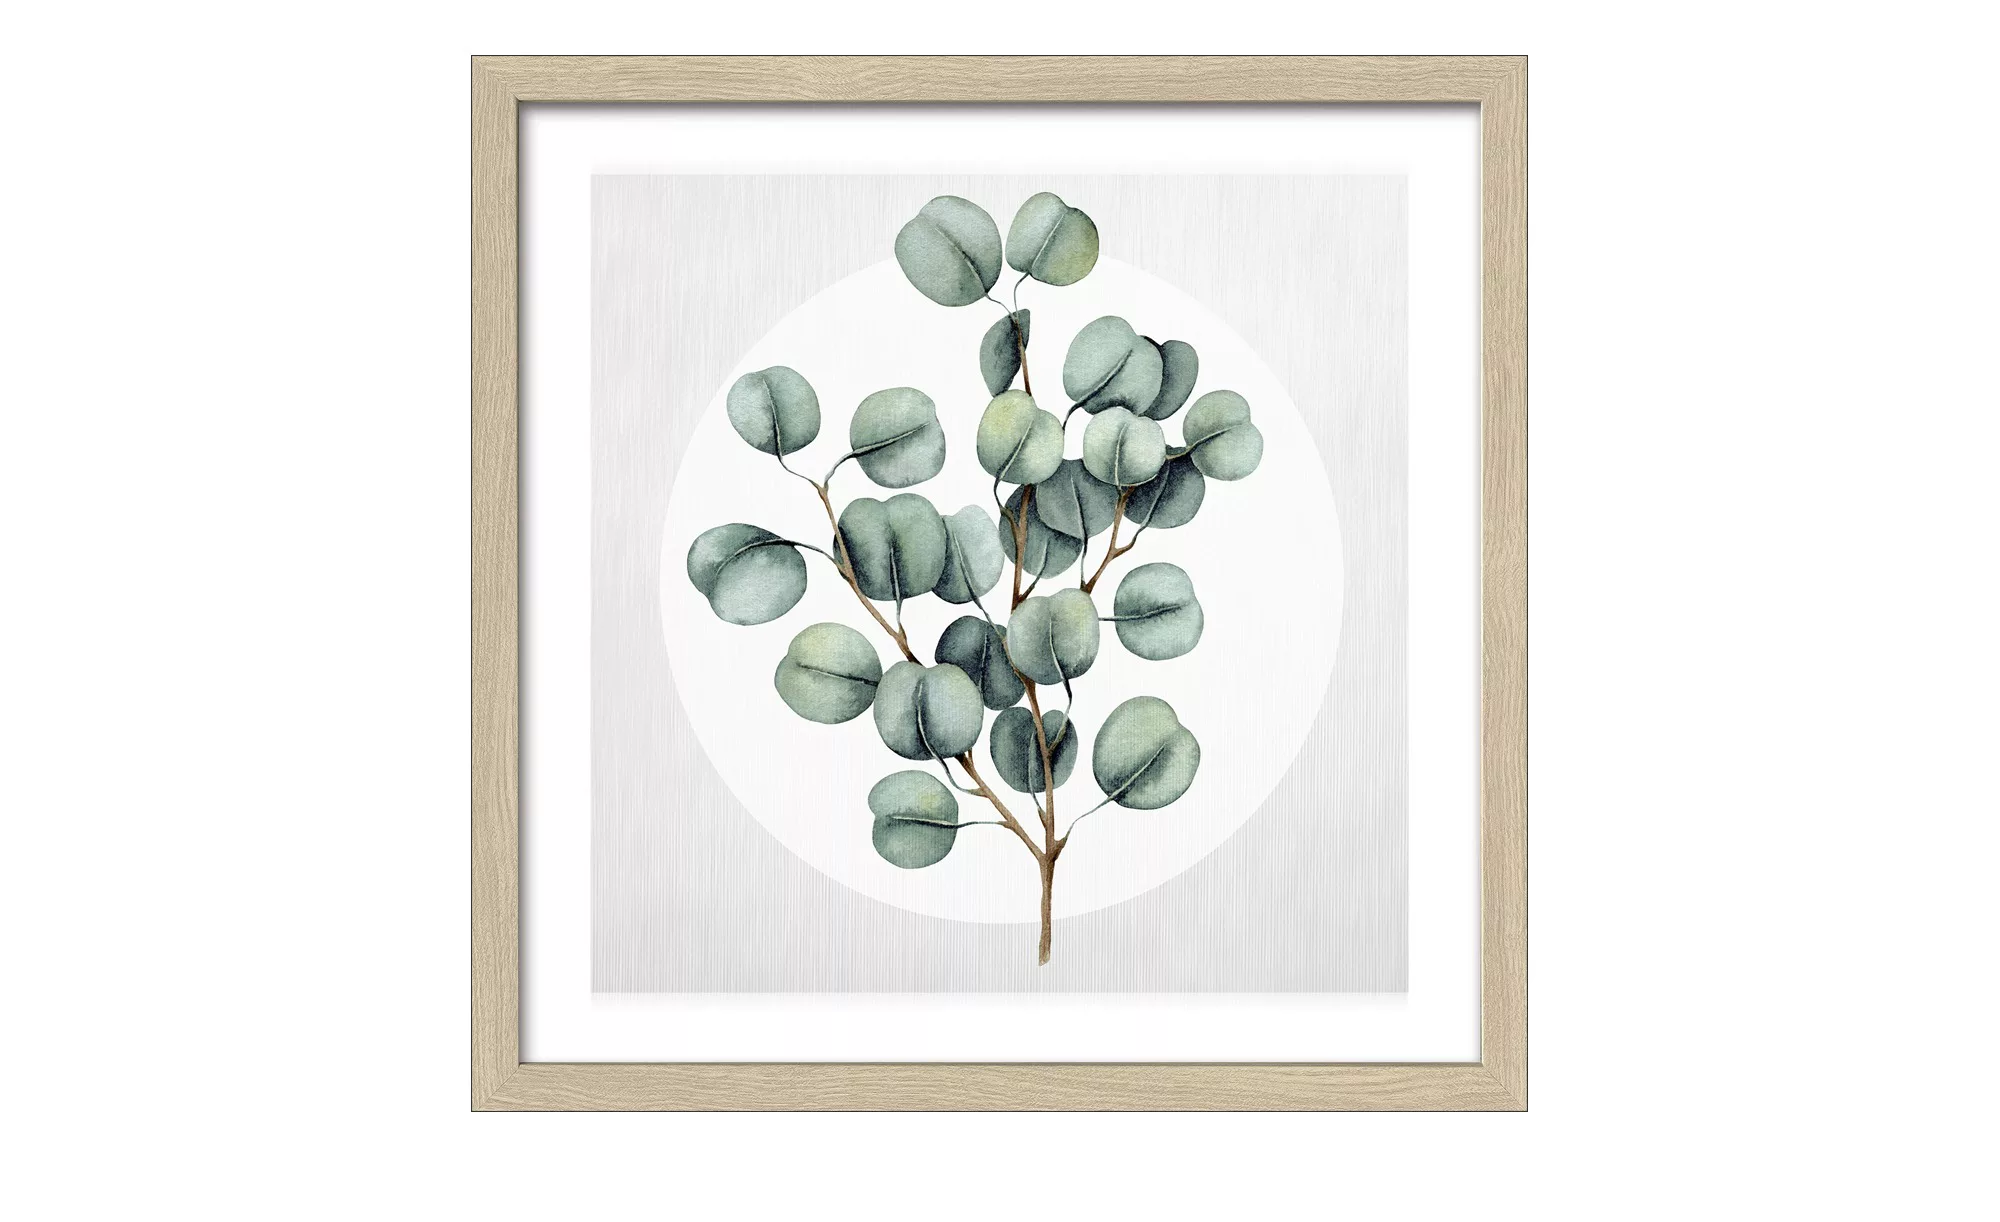 Gerahmtes Bild 30x30 cm  Different Eucalyptus Branches III - 30 cm - 30 cm günstig online kaufen